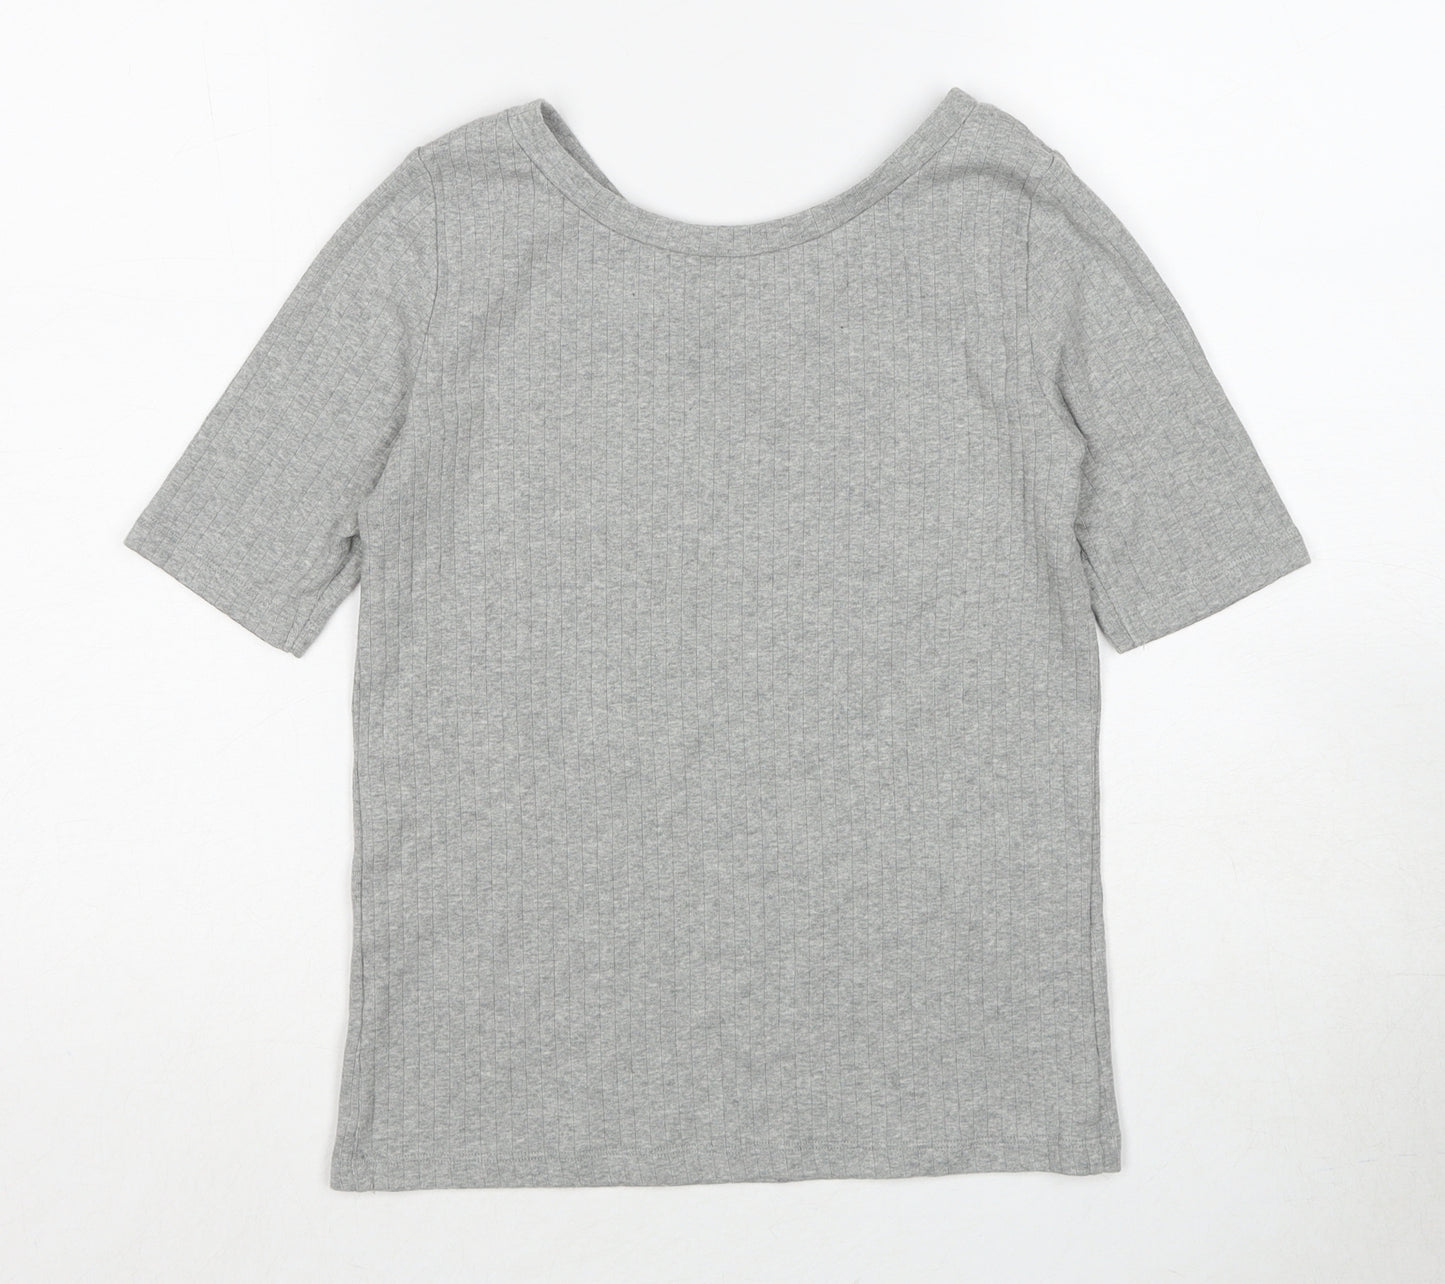 Uniqlo Womens Grey Cotton Basic T-Shirt Size M V-Neck